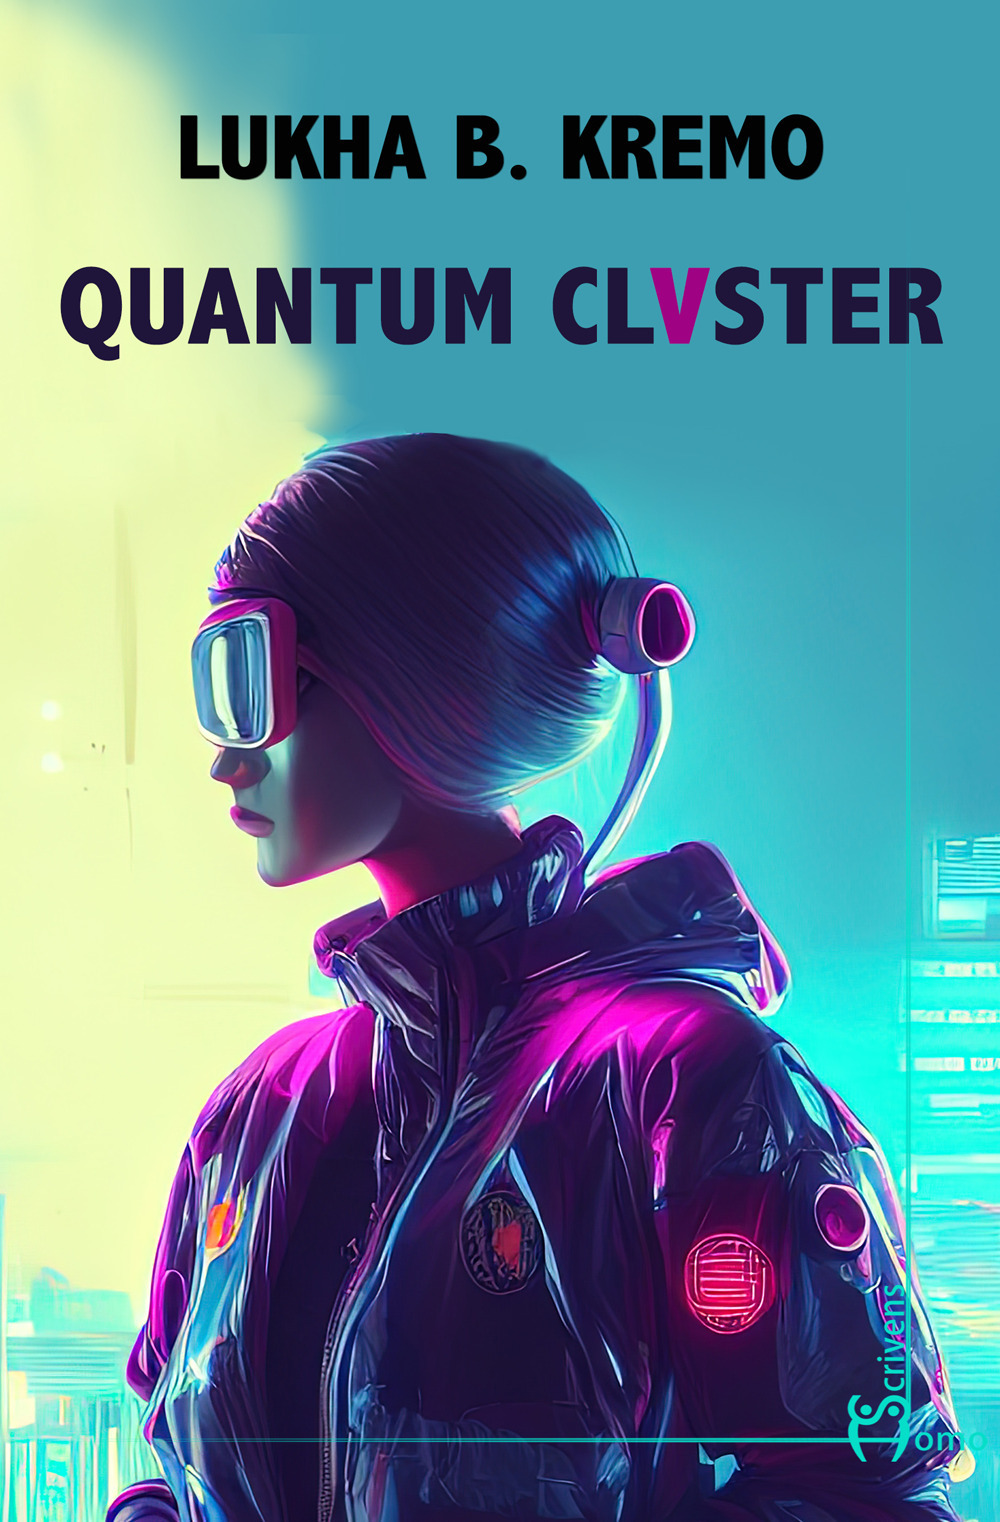 Quantum cluster